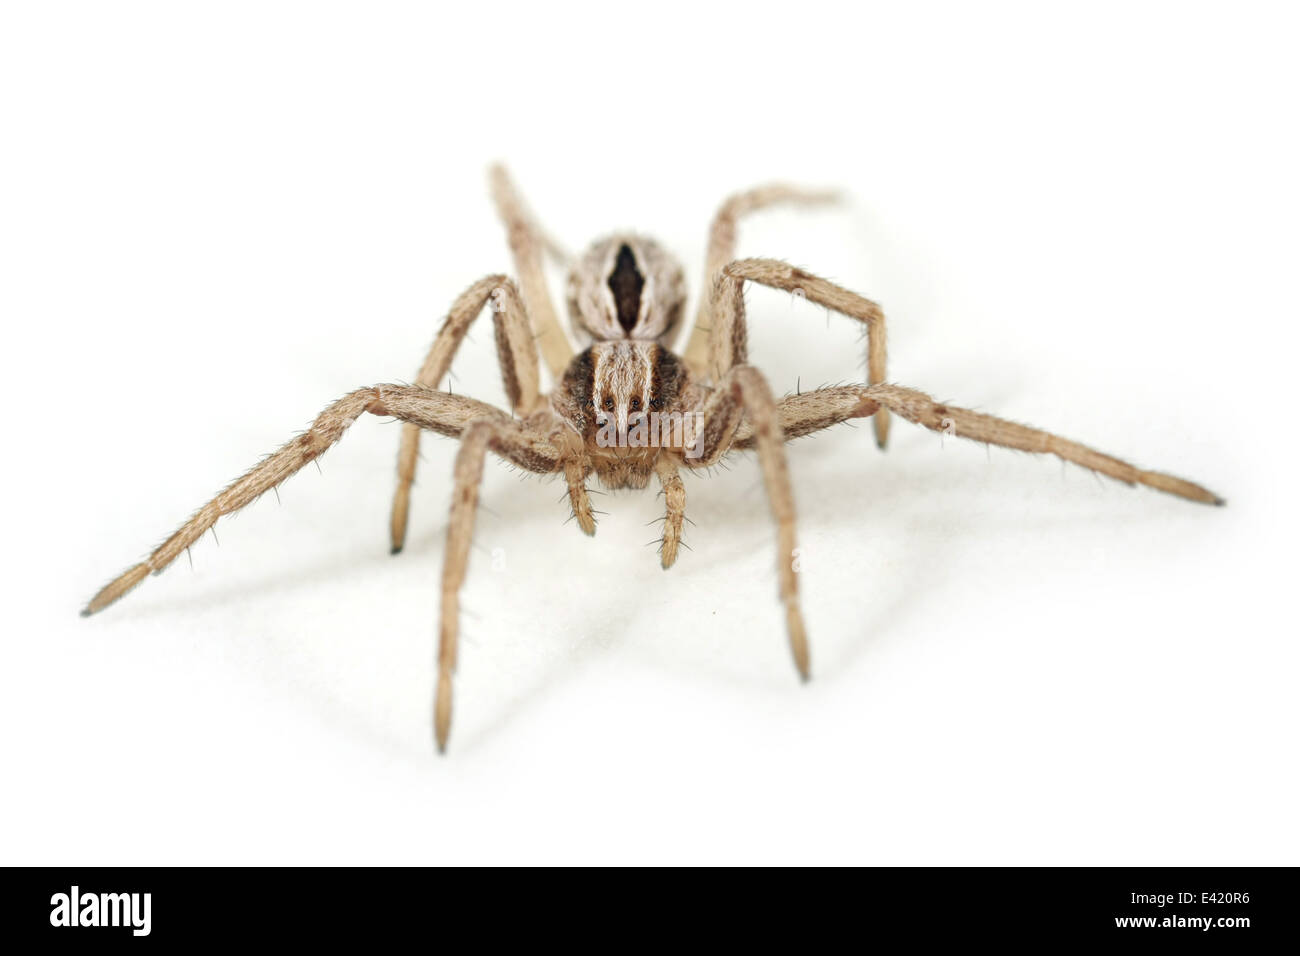 Juvenile Thanatus Formicinus Spinne, Teil der Familie Philodromidae - Running Krabben Spinnen. Isoliert auf weißem Hintergrund. Stockfoto